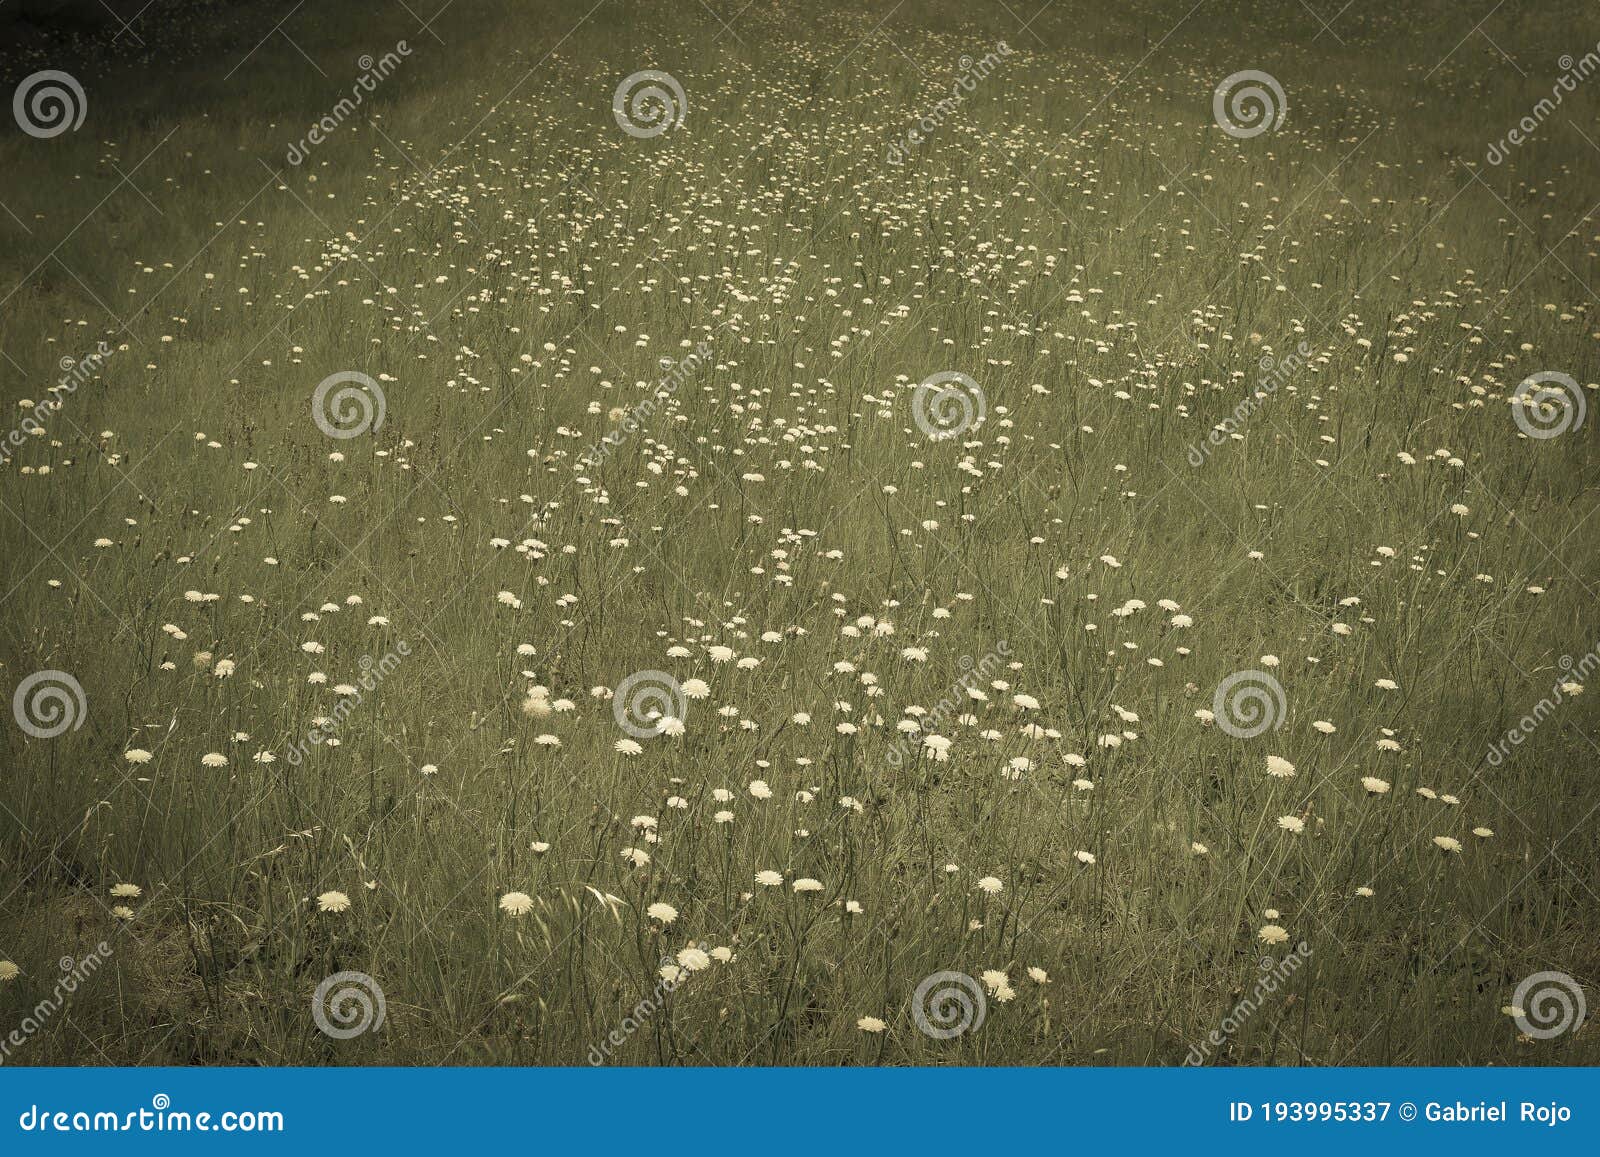 flowery landscape in the plain,